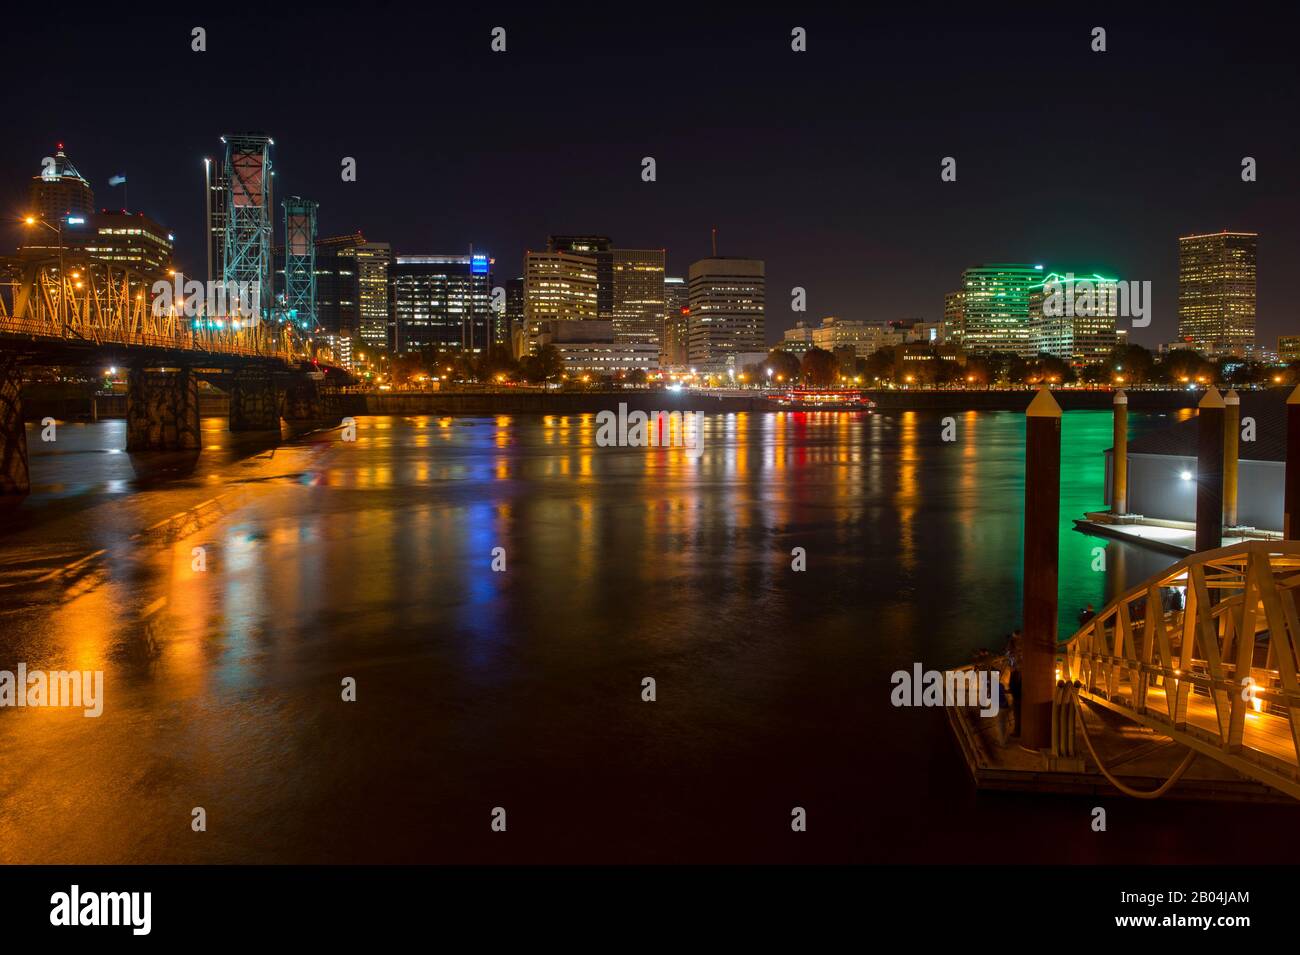 Vista notturna del centro di Portland con Hawthorne Bridge dall'altra parte del fiume Willamette in Oregon, Stati Uniti. Foto Stock